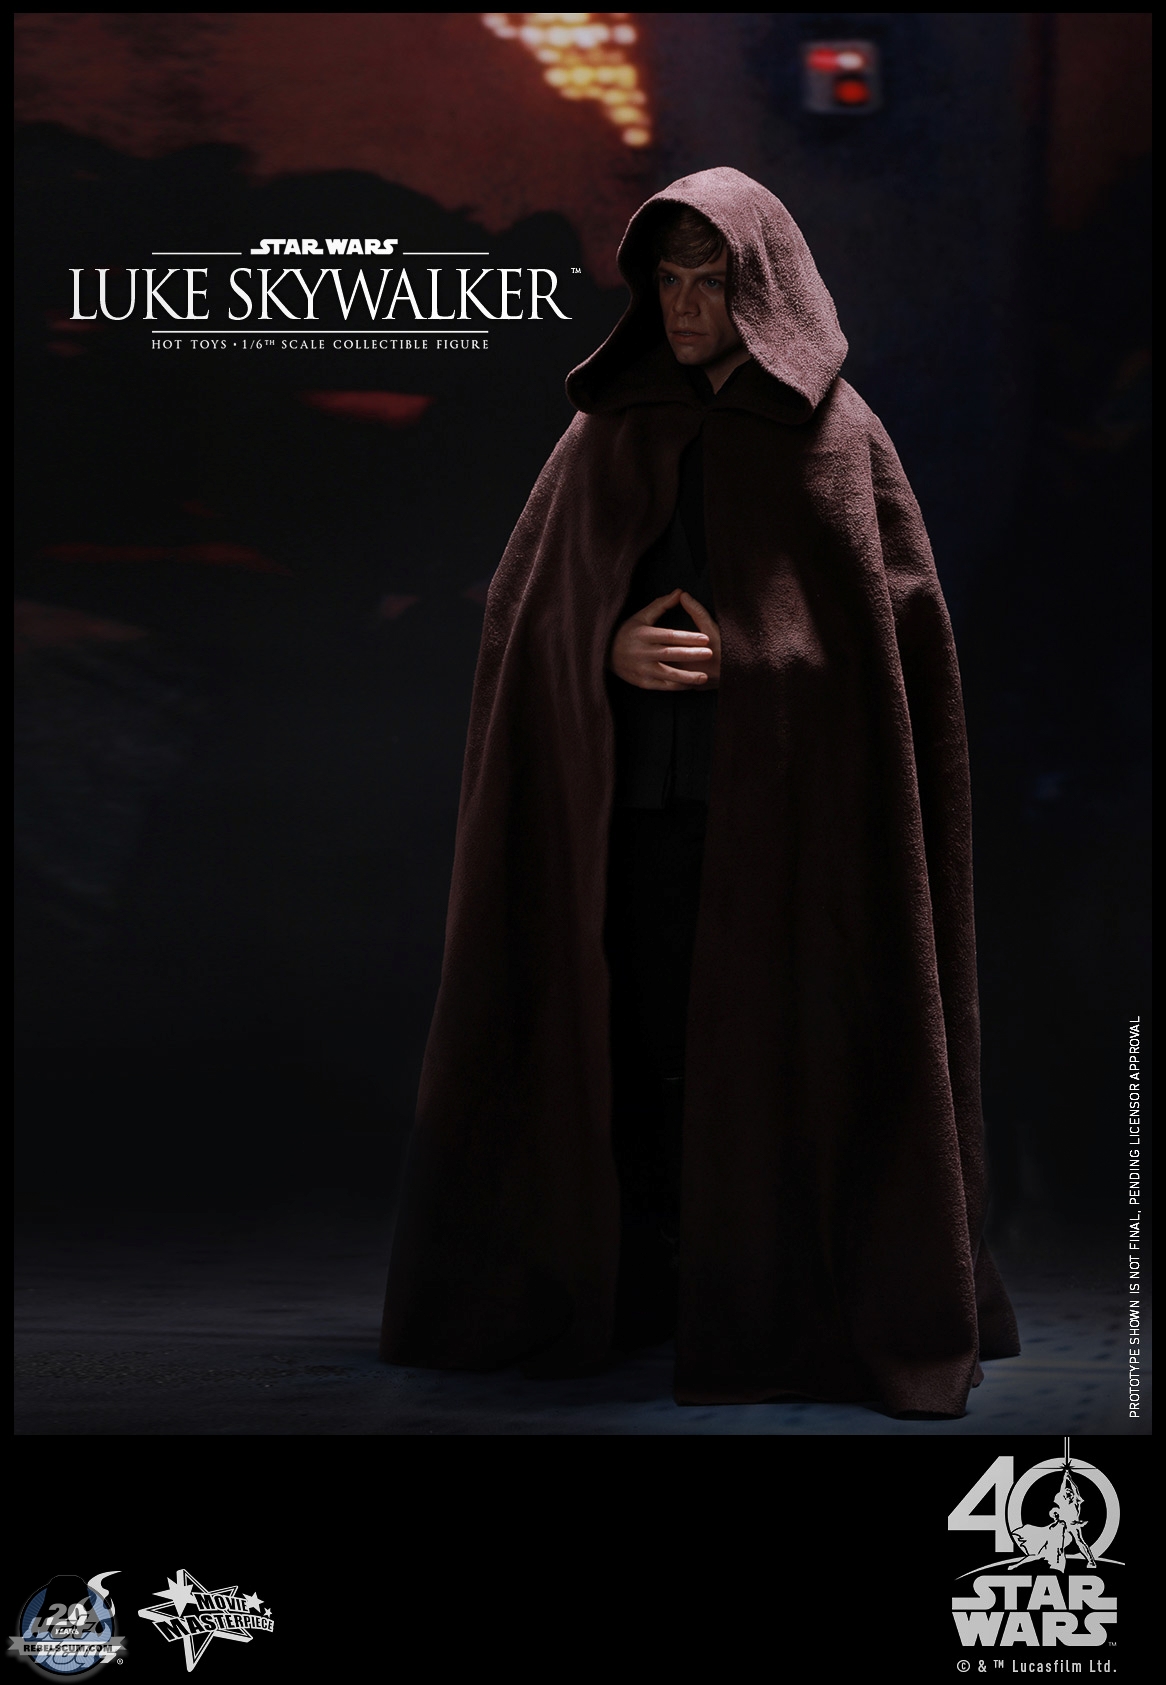 Hot-Toys-MMS429-Return-of-the-Jedi-Luke-Skywalker-004.jpg